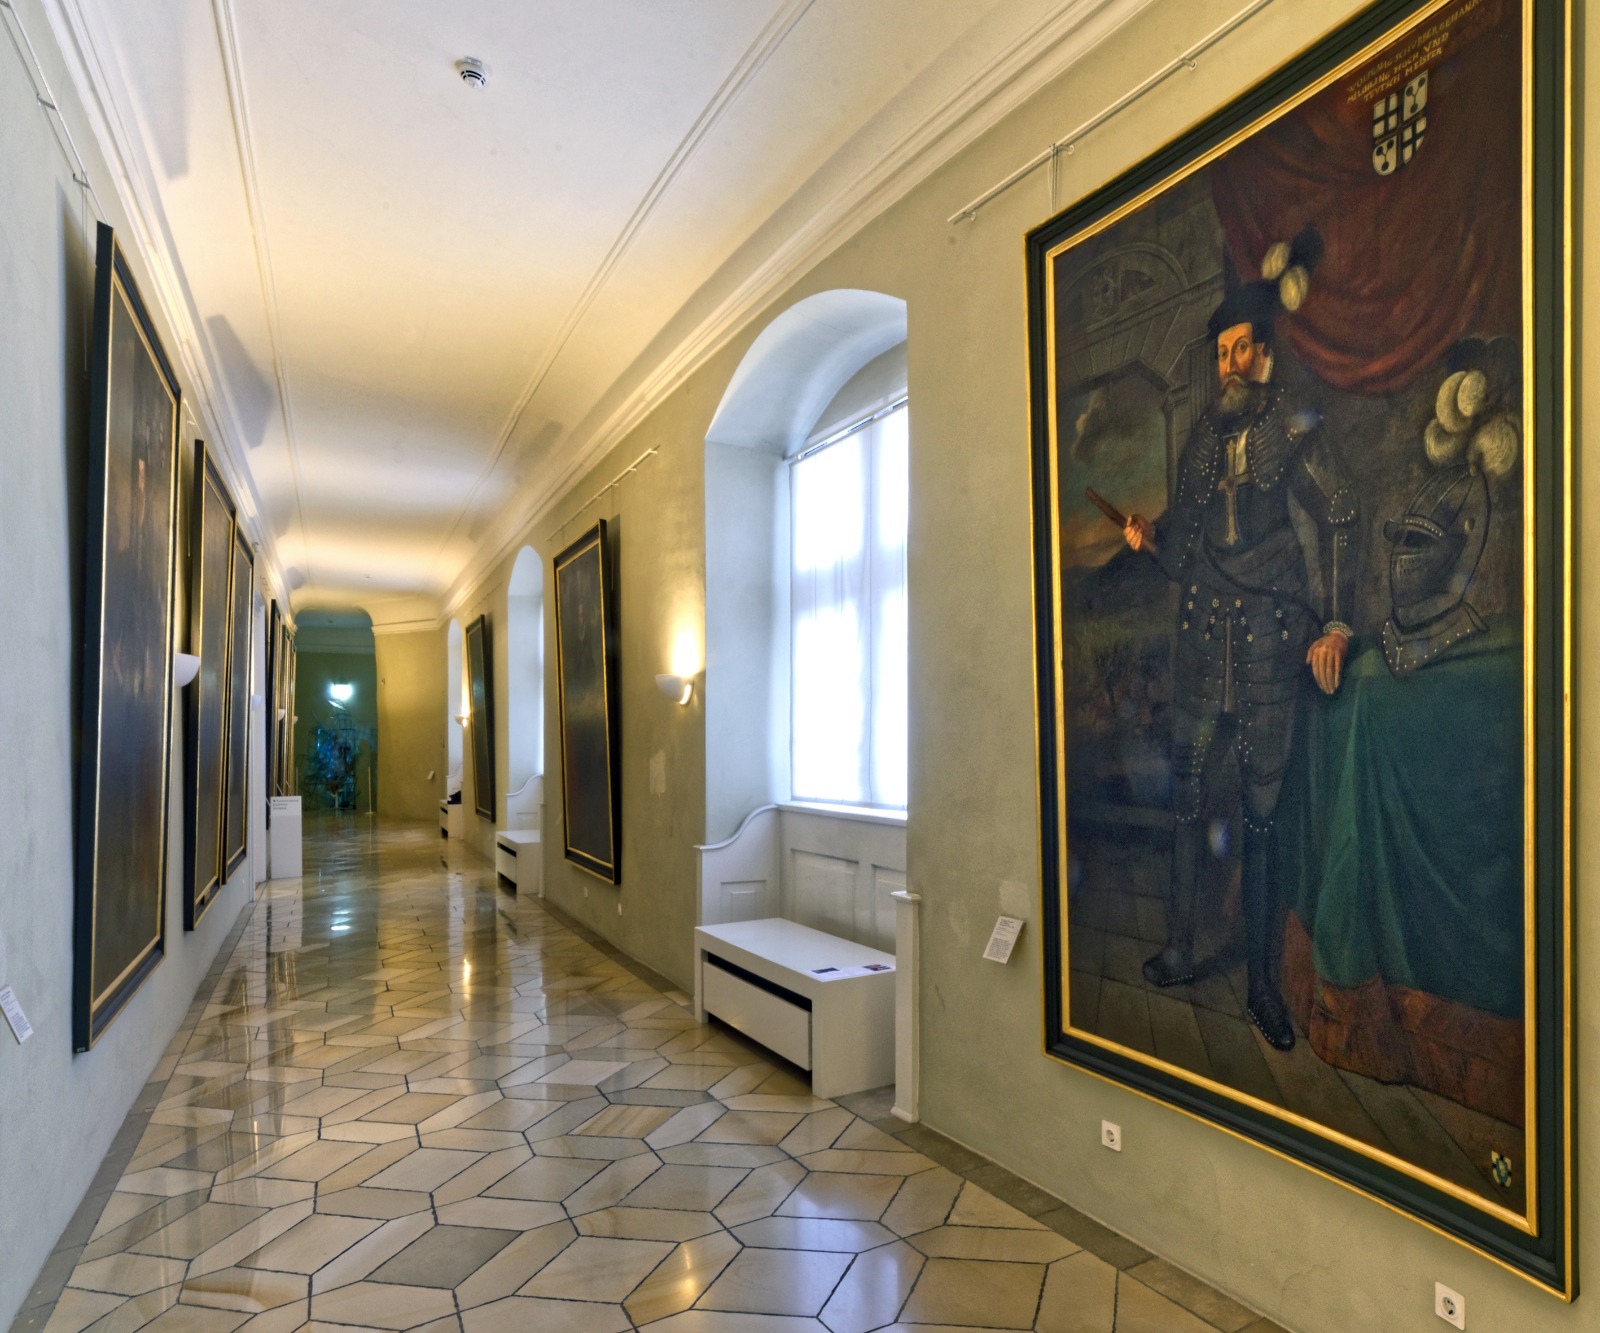 Das Bild zeigt die Hochmeistergalerie in Bad Mergentheim, die auf beiden Seiten mit großen Porträts der Hochmeister des Deutschen Ordens gesäumt ist.